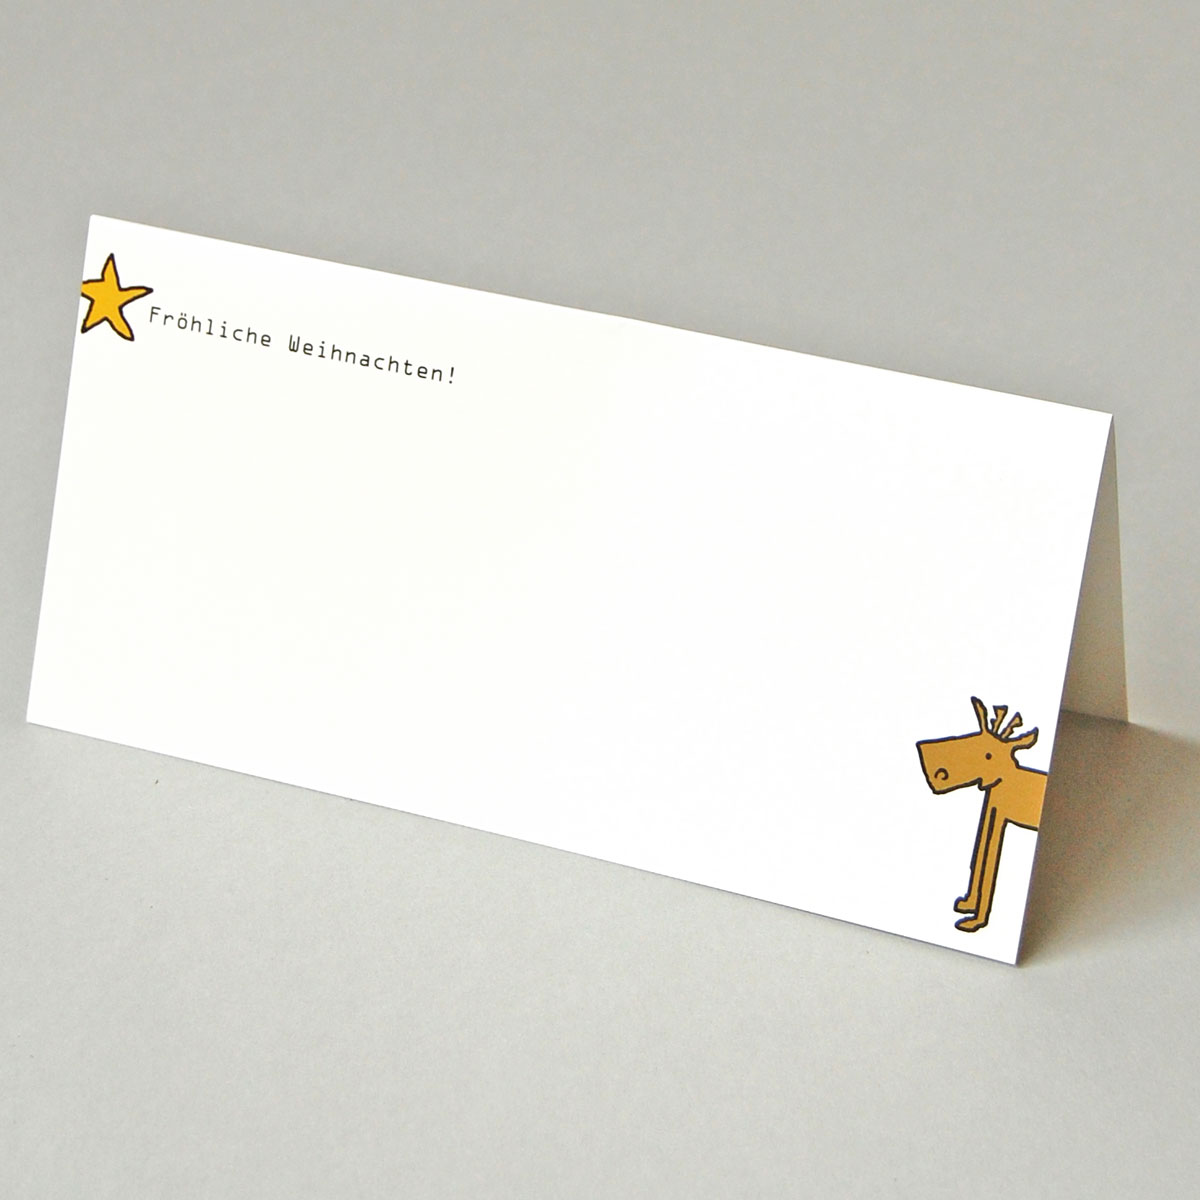 bestellen Sie Designer-Weihnachtskarten mit Elch und Stern